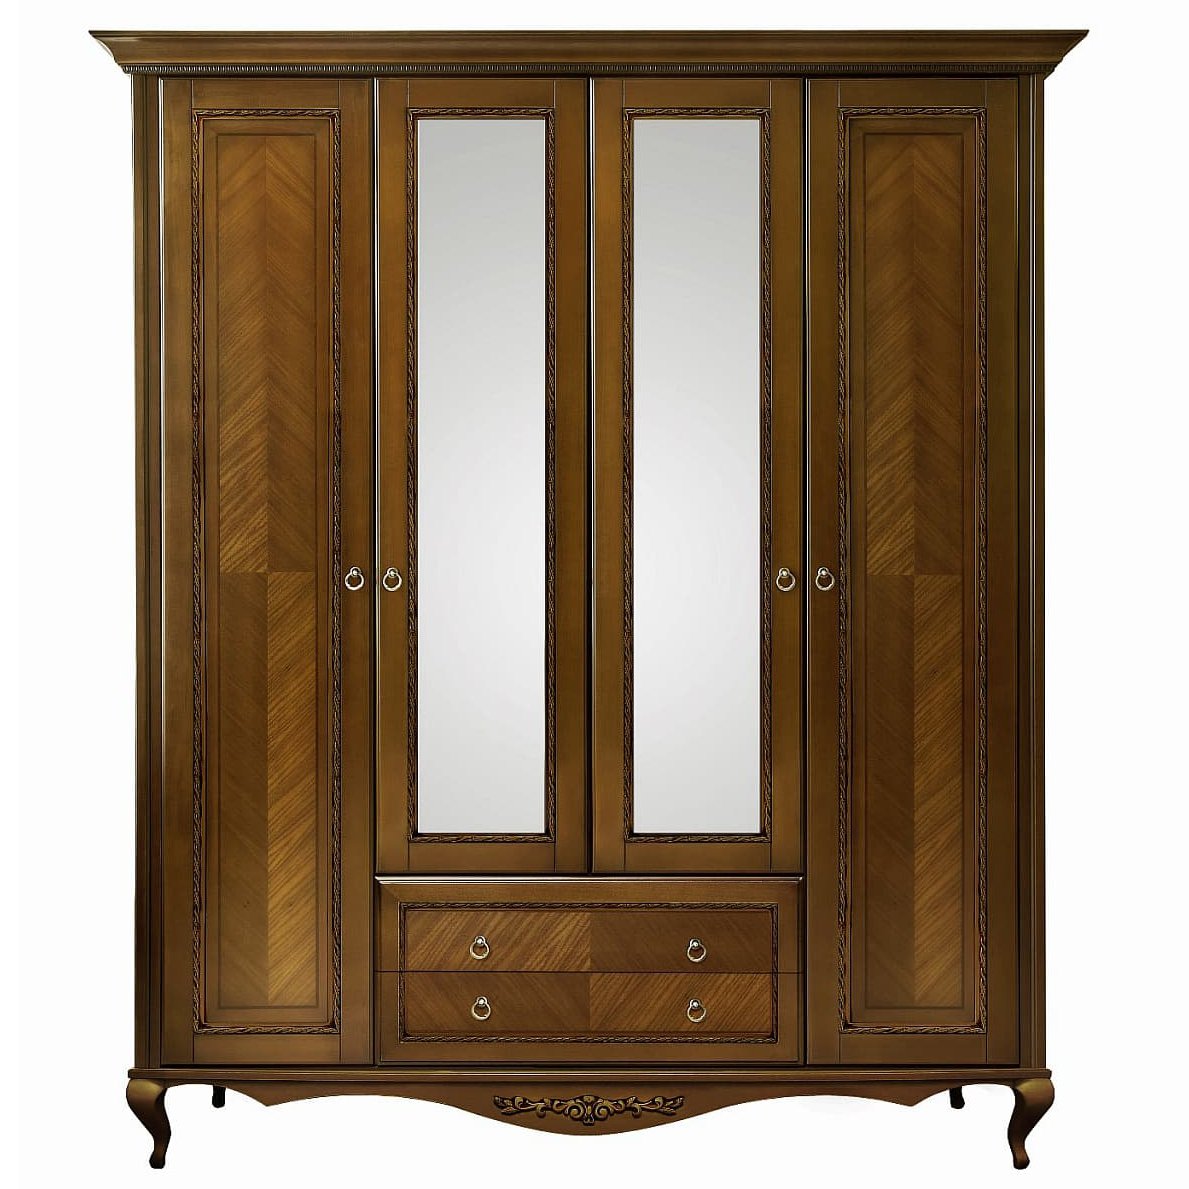 Шкаф платяной Timber Неаполь, 4-х дверный с зеркалами 204x65x227 см цвет: орех (T-524)T-524